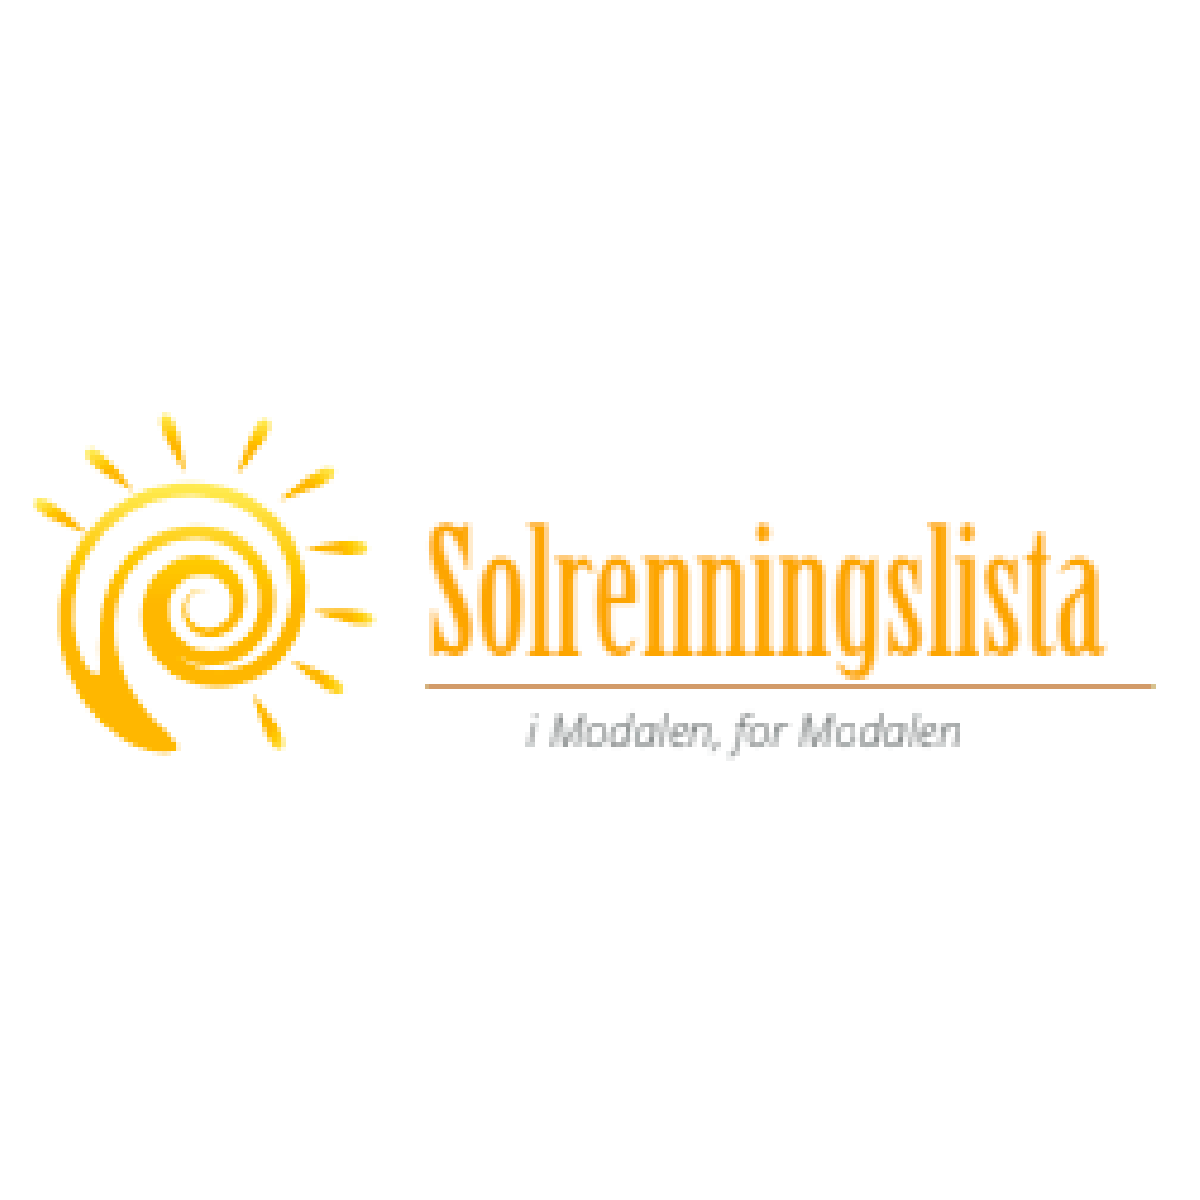 Solrenningslista logo